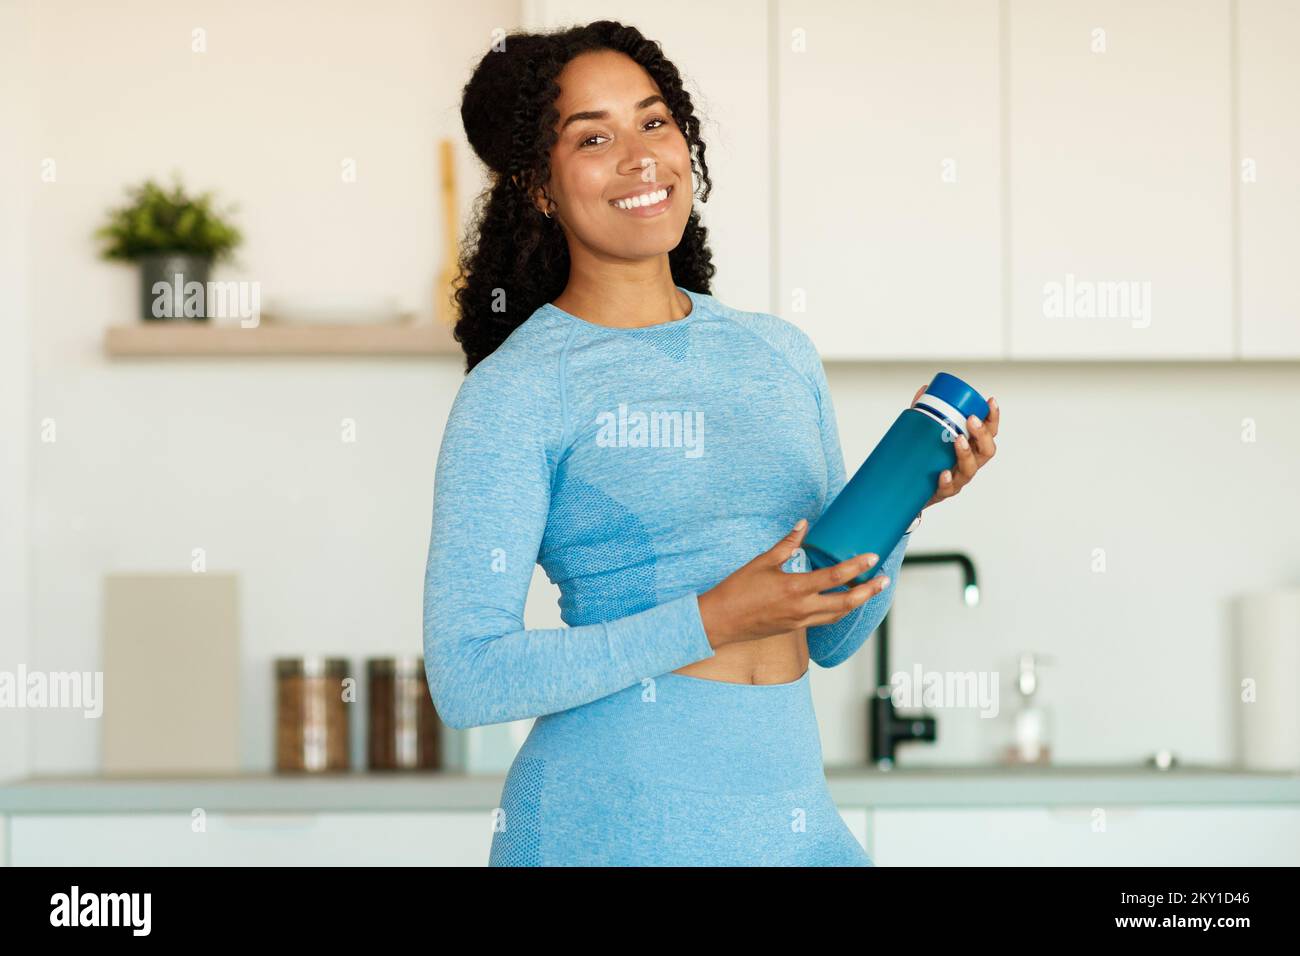 Glückliche junge afroamerikanische Frau mit einer Flasche Protein-Shake in den Händen, die vor der Kamera lächelt und in der Küche steht Stockfoto